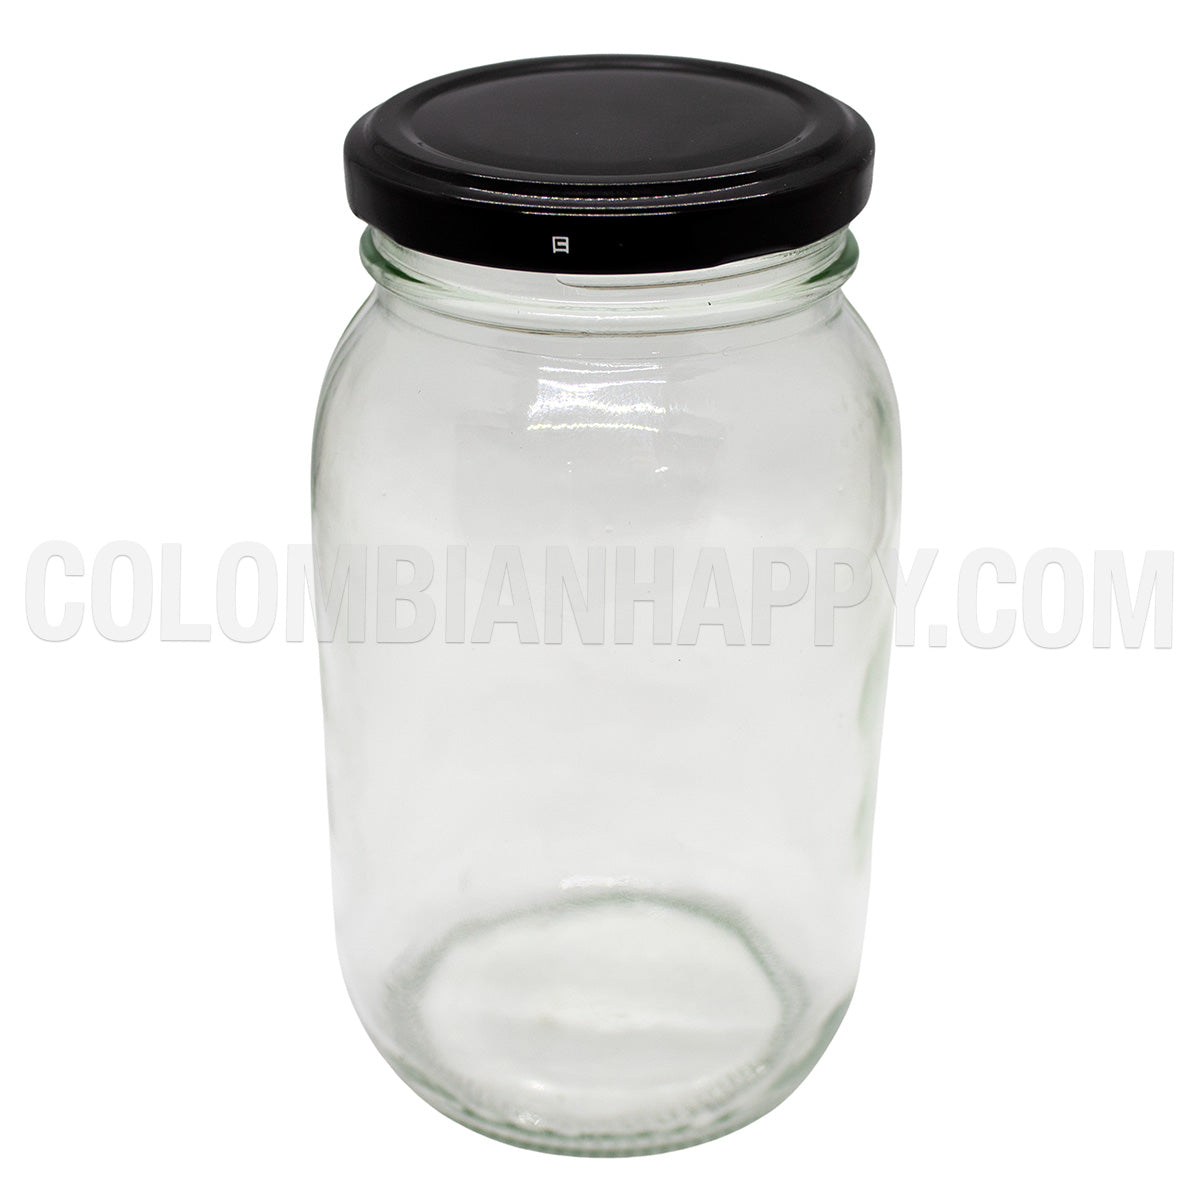 Envase de vidrio para curado Capacidad de 500 ml Tapa metálica negra